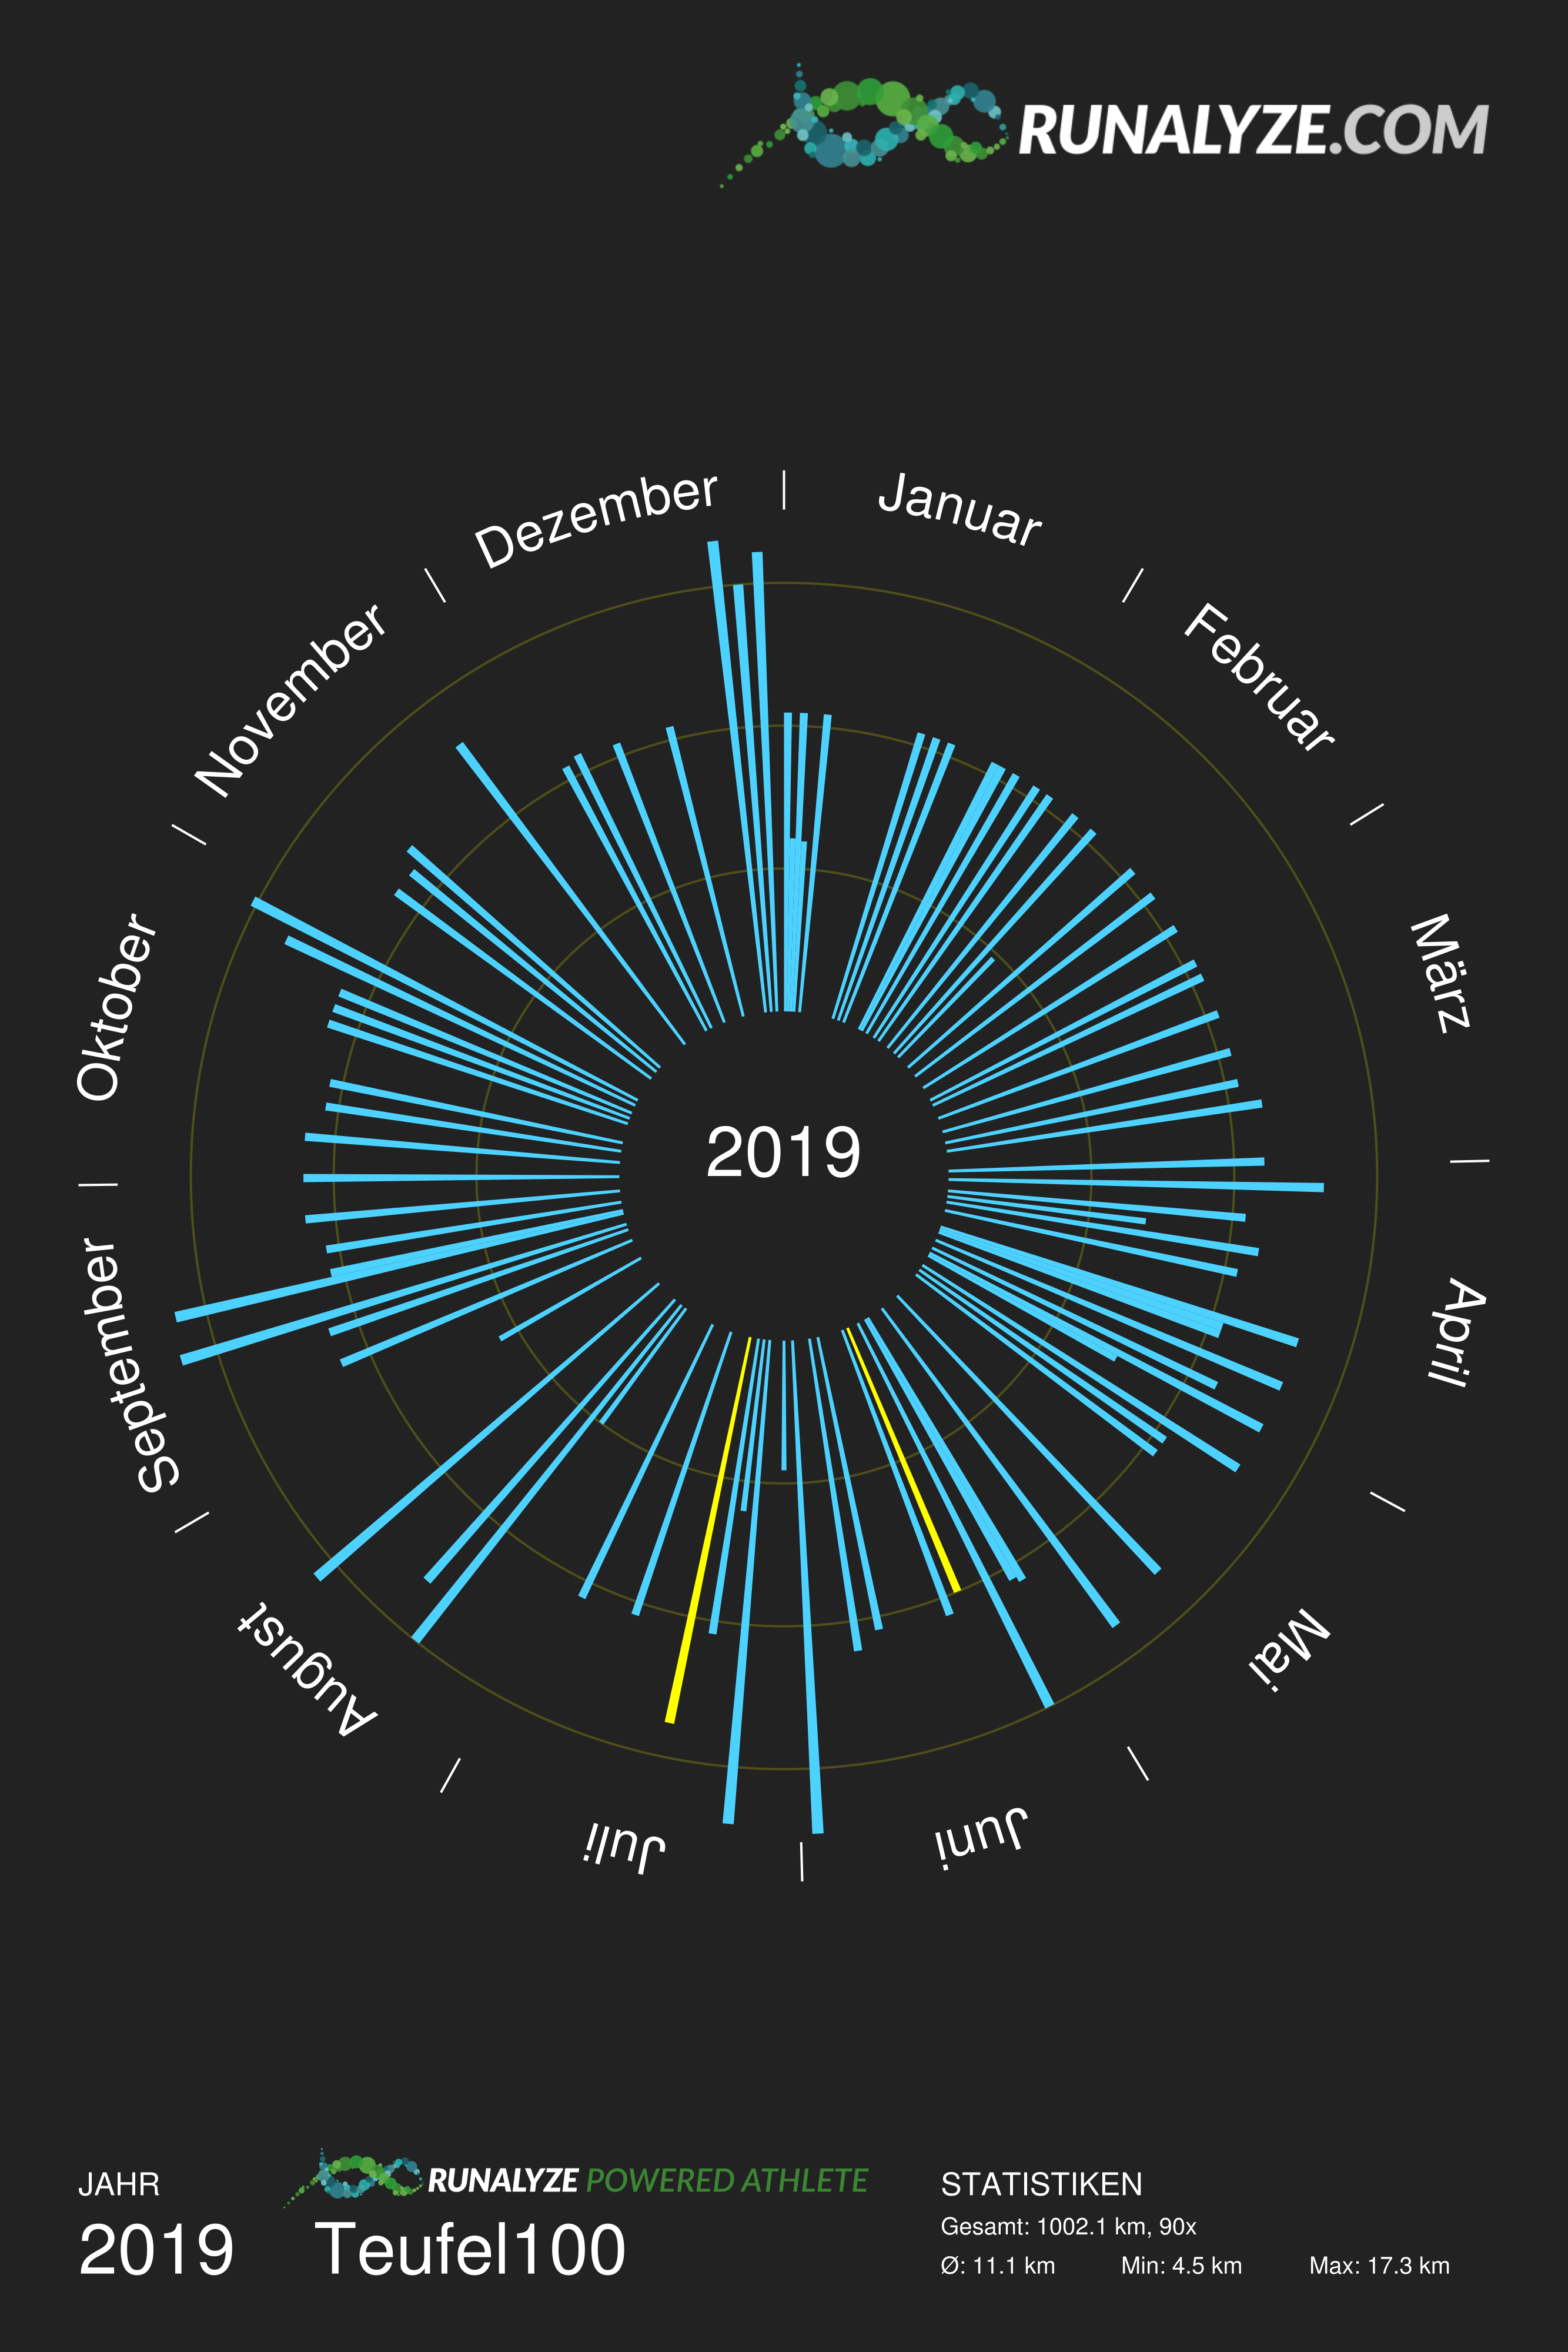 Grafik mit allen Laeufen aus dem Jahr 2019